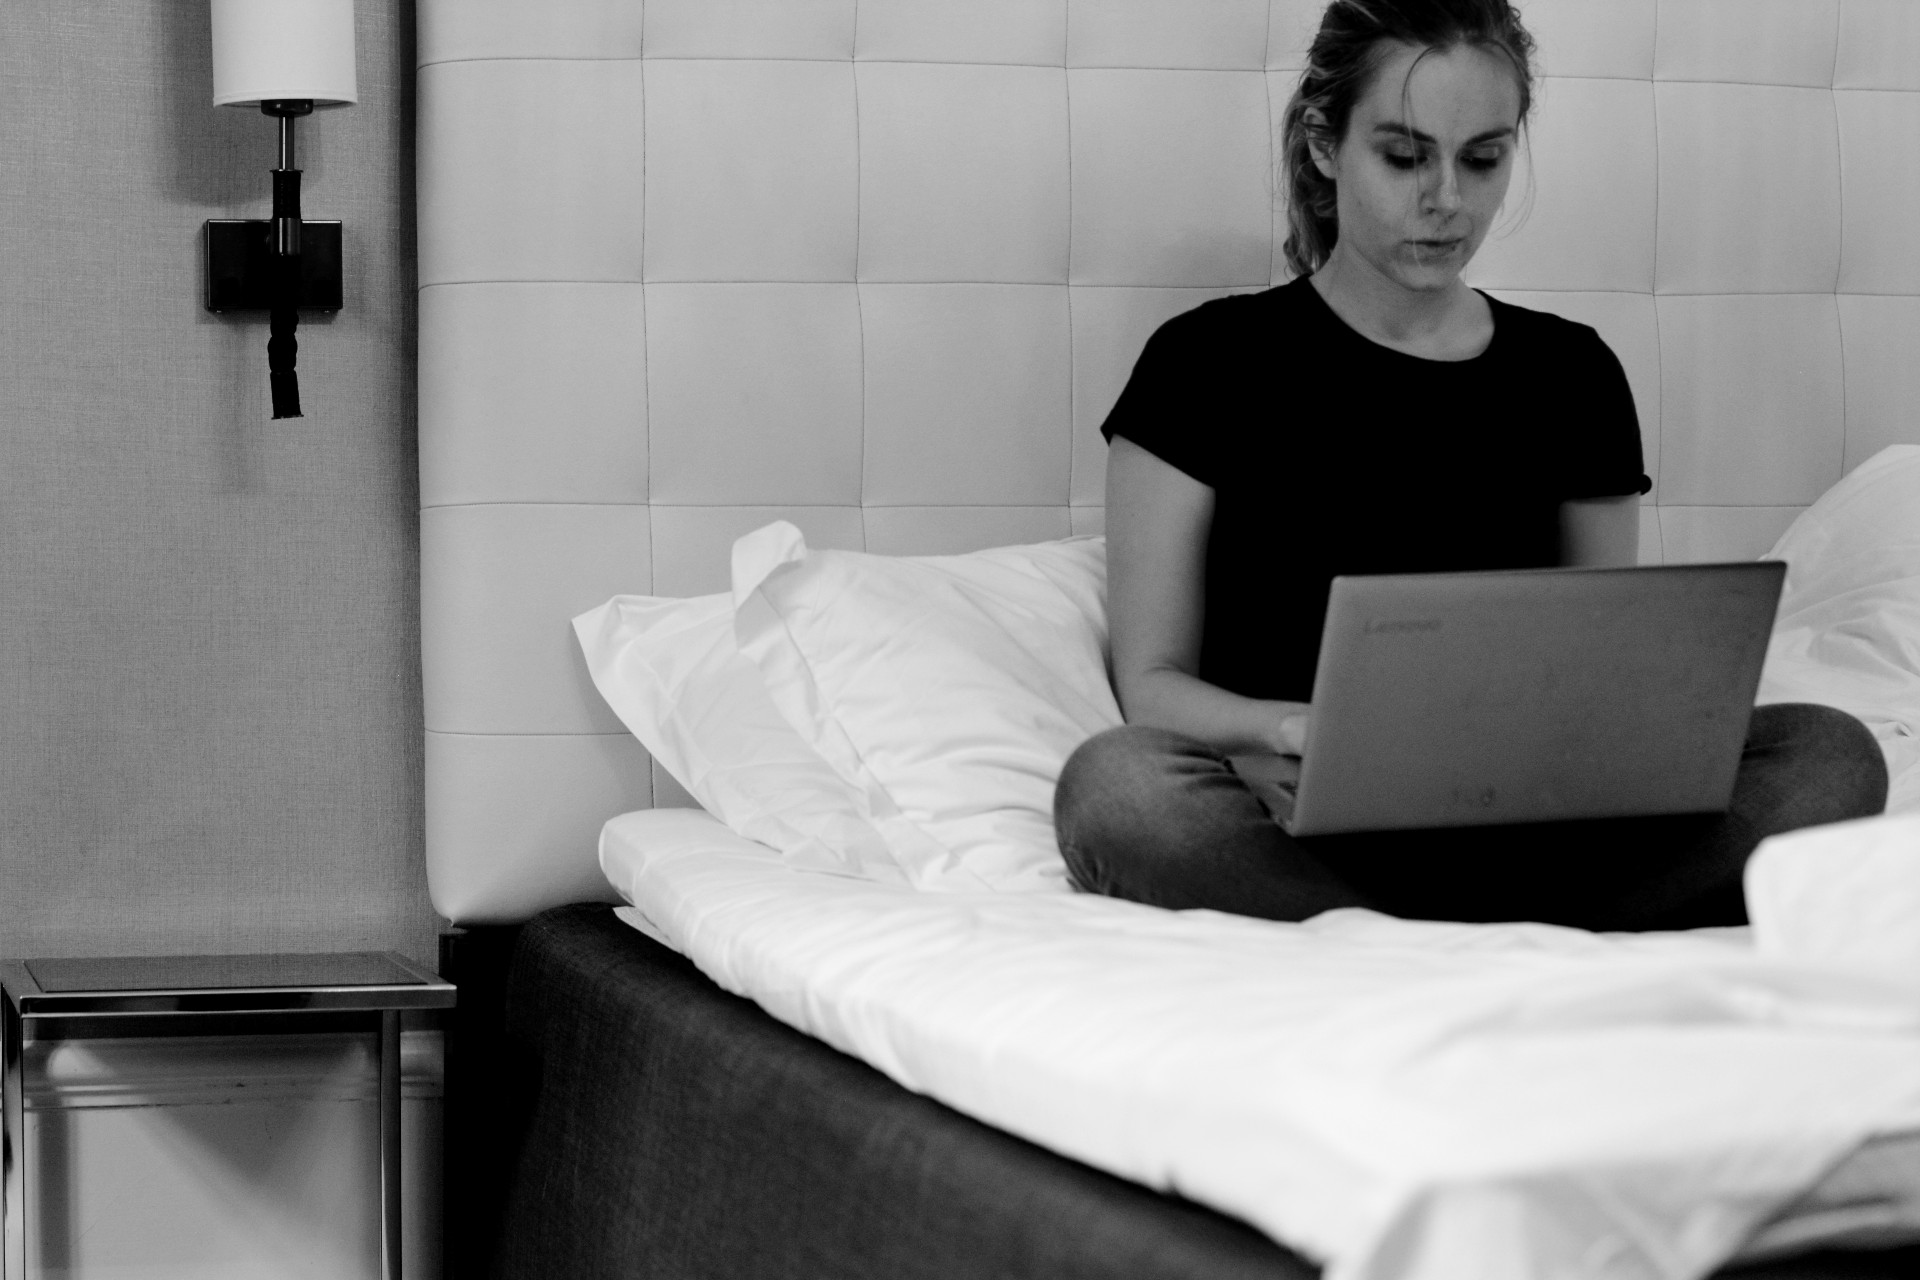 Ulrika skriver på en laptop på en hotellsäng. Svartvit bild.